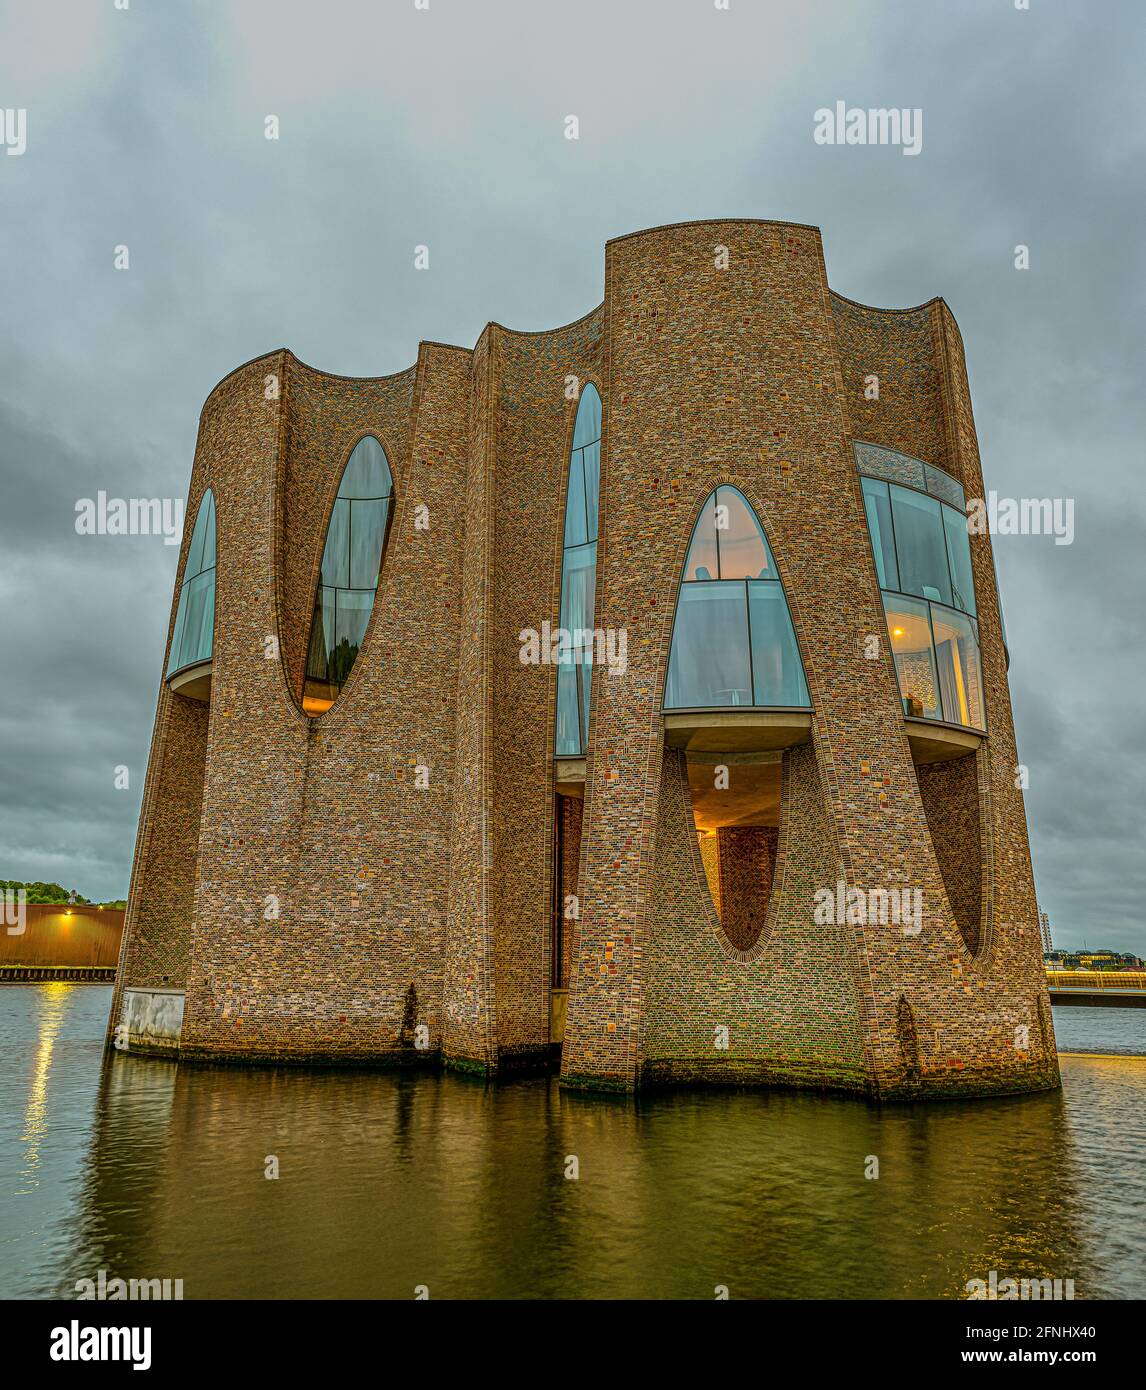 Das ikonische Gebäude Fjordenhus steht nachts im Wasser, Vejle, Dänemark, 12. Mai 2021 Stockfoto